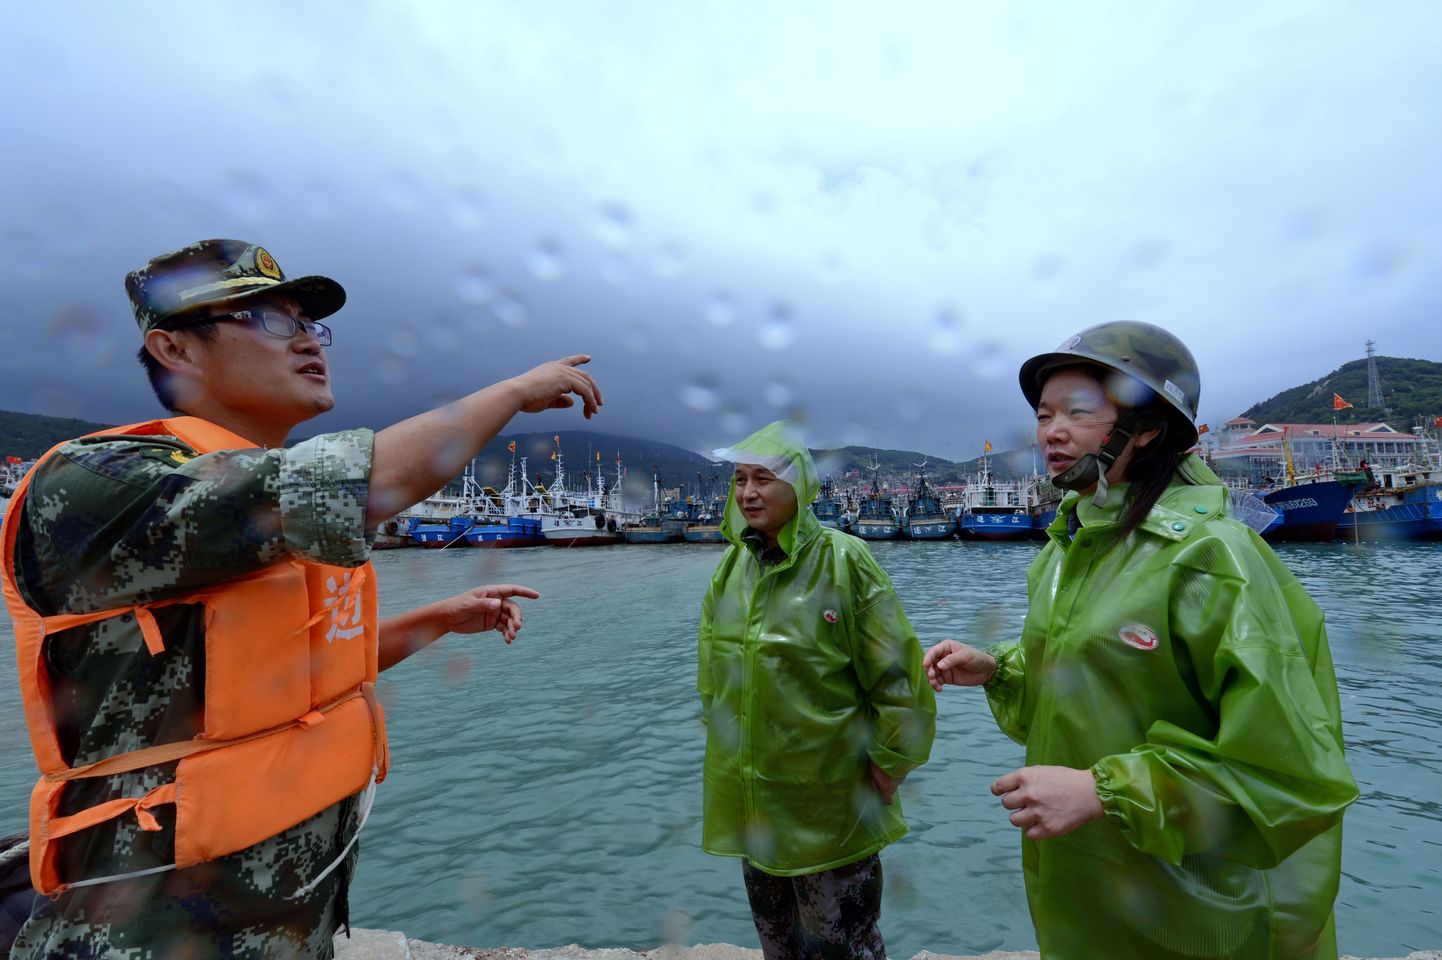 Hiinas valmistutakse orkaanide saabumiseks